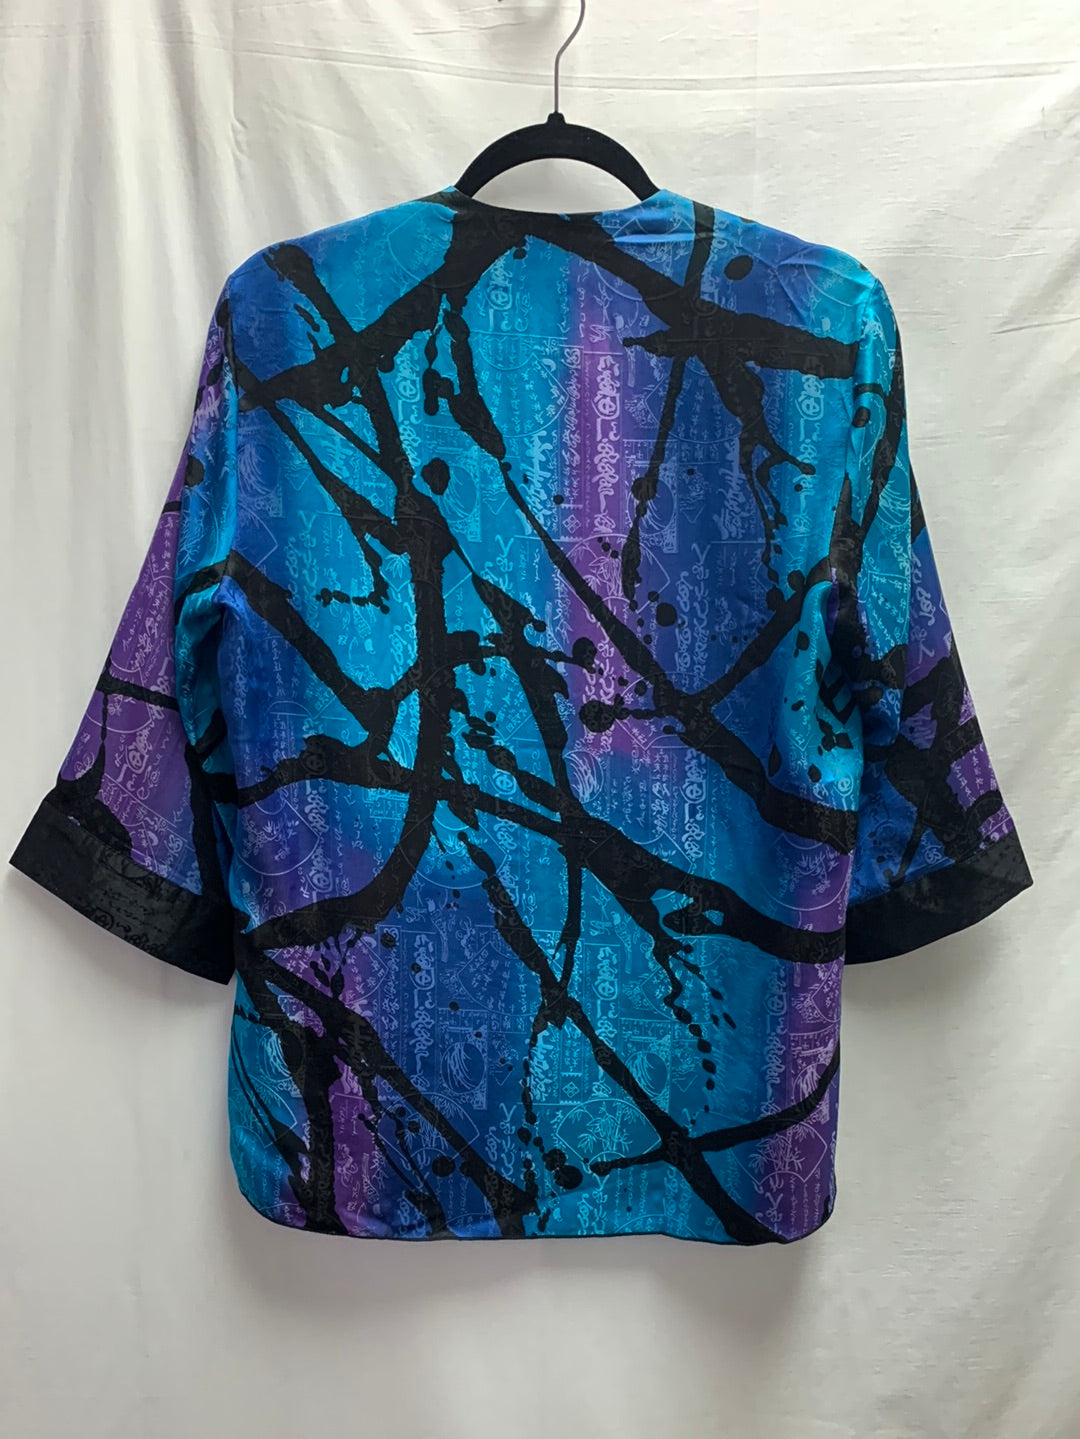 SIMPLY SILK blue purple print 3/4 Sleeve Kimono Cardigan Jacket - Small